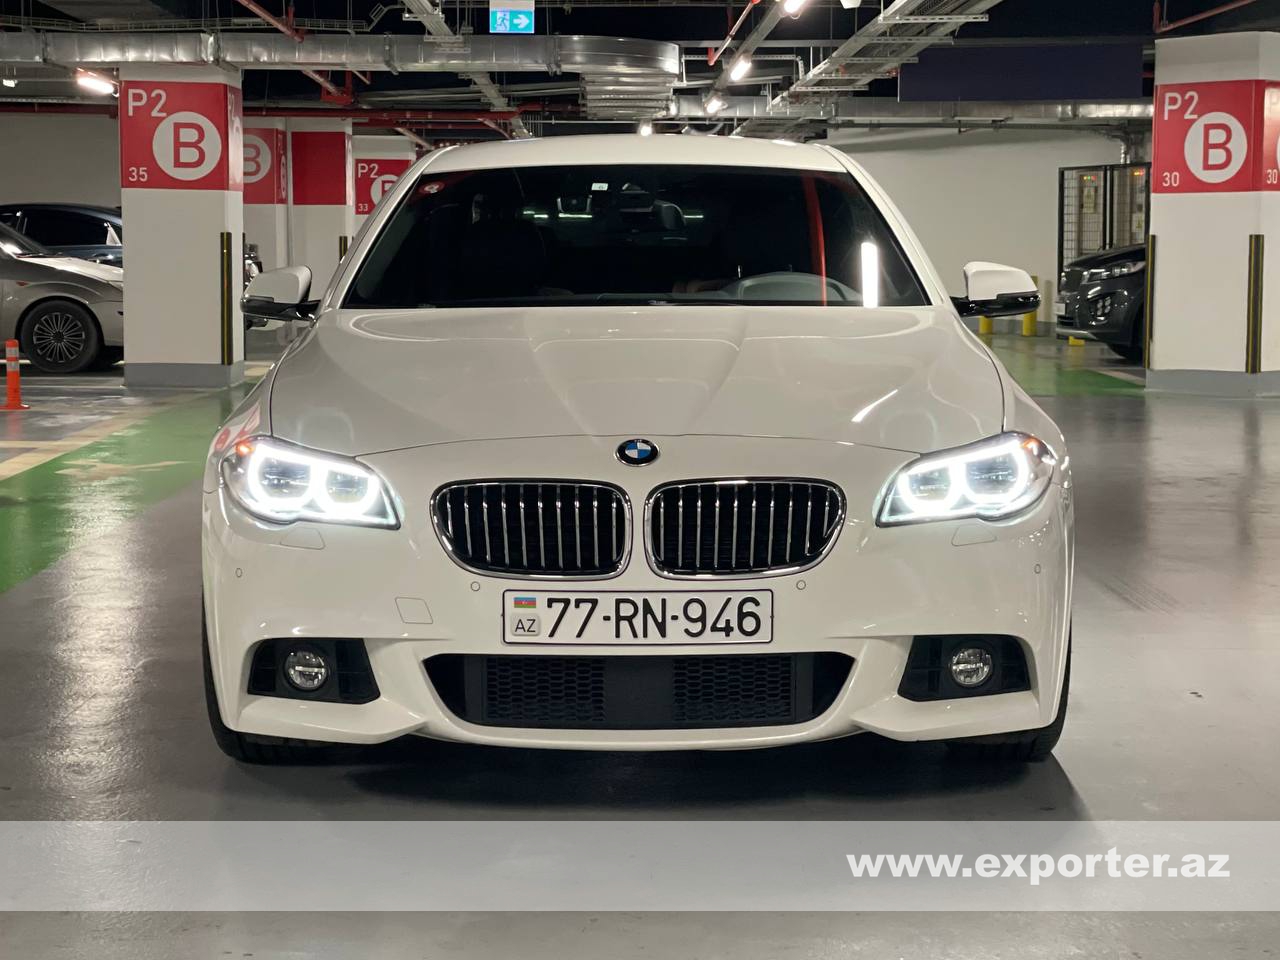 BMW 528i M Sport (photo: 1)